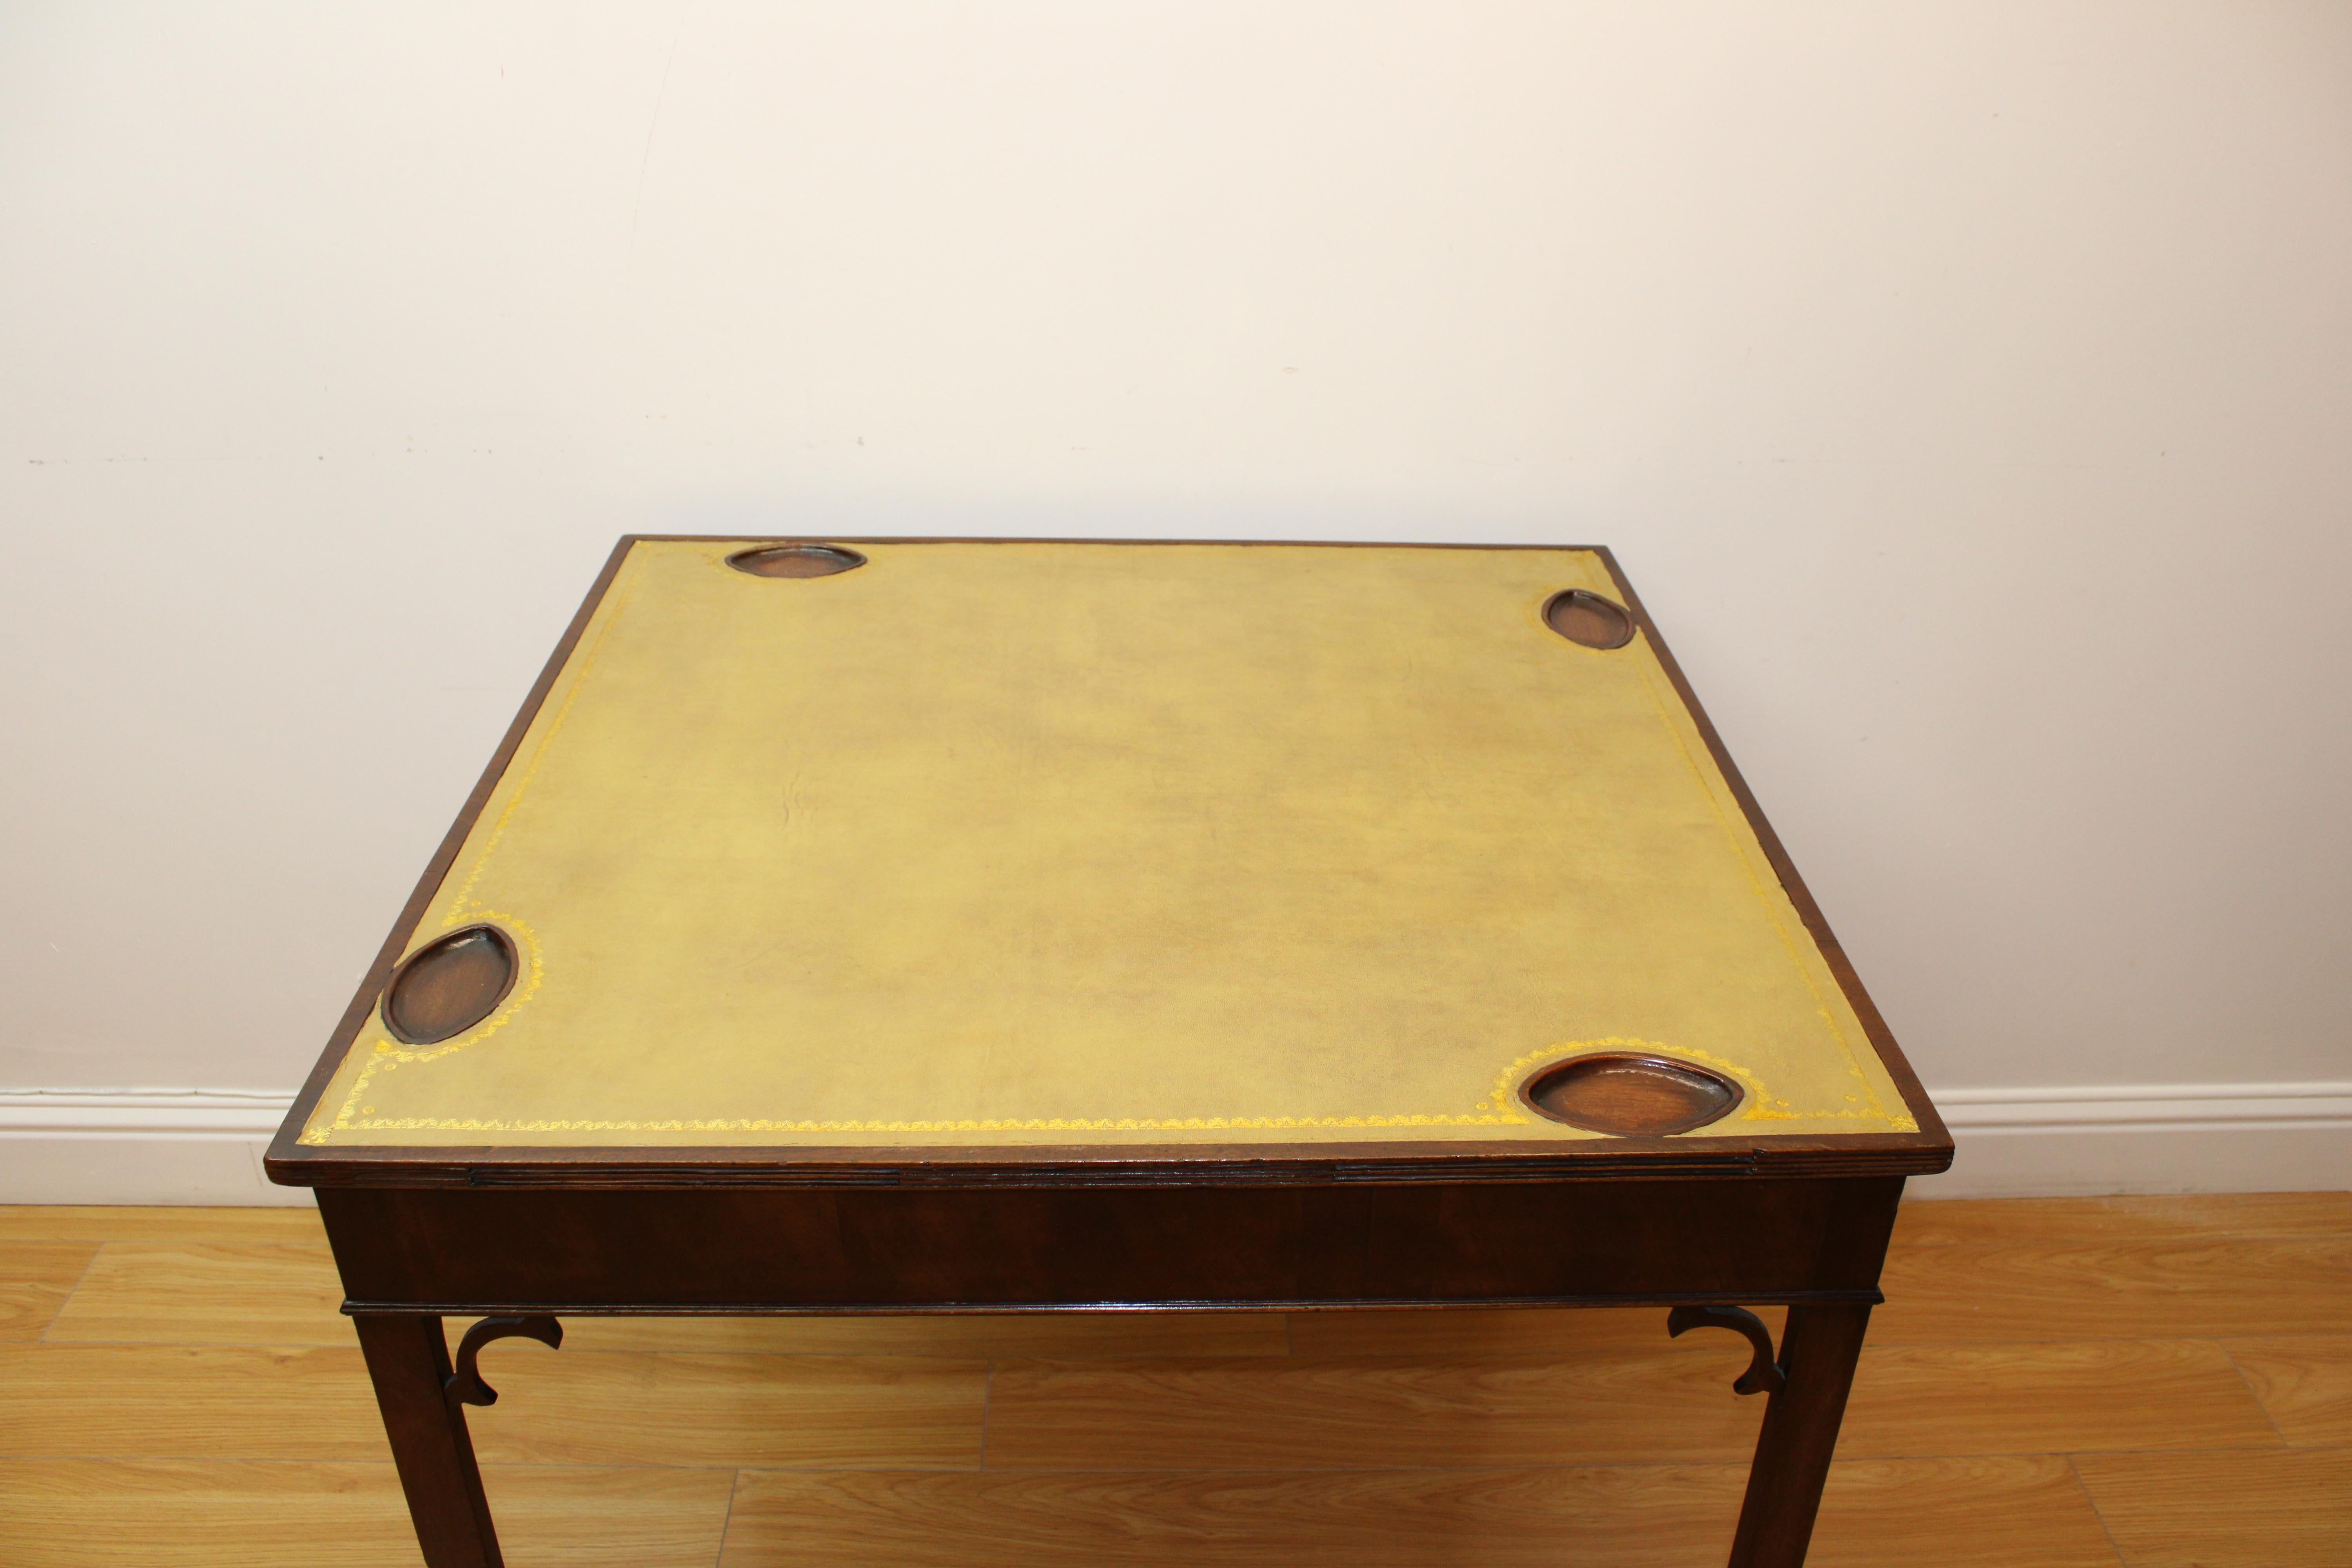 C. début du 20e siècle

Table de jeux avec plateau en cuir gravé et inserts pour les jetons.